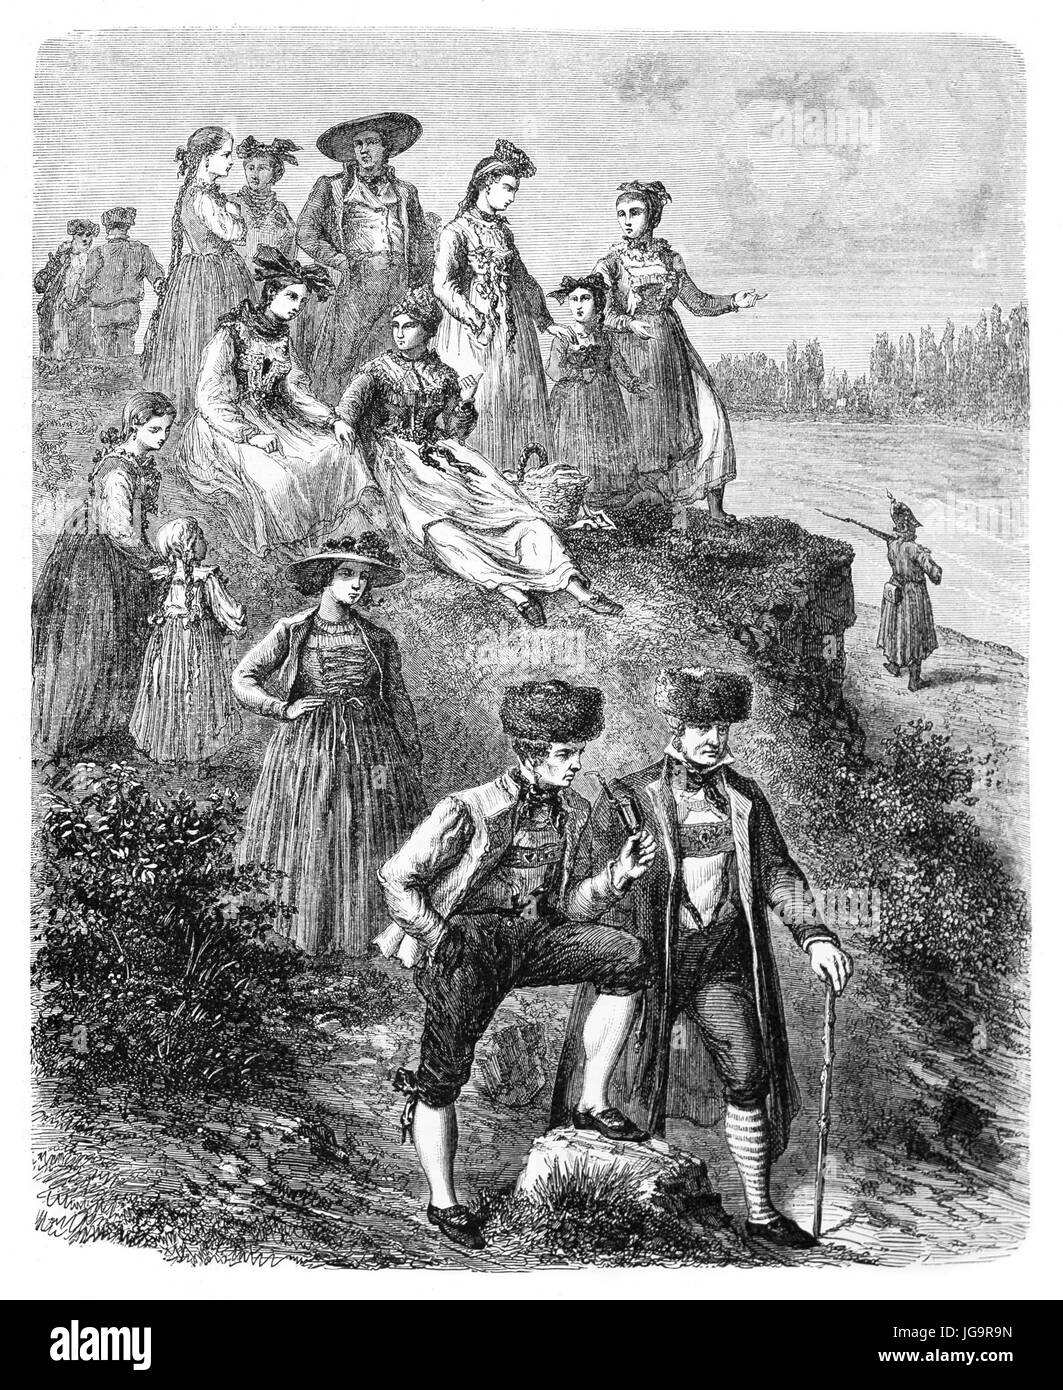 Vecchia illustrazione di Baden contadini in costumi tradizionali. Creato da Lancelot, pubblicato in Le Tour du Monde, Parigi, 1861 Foto Stock